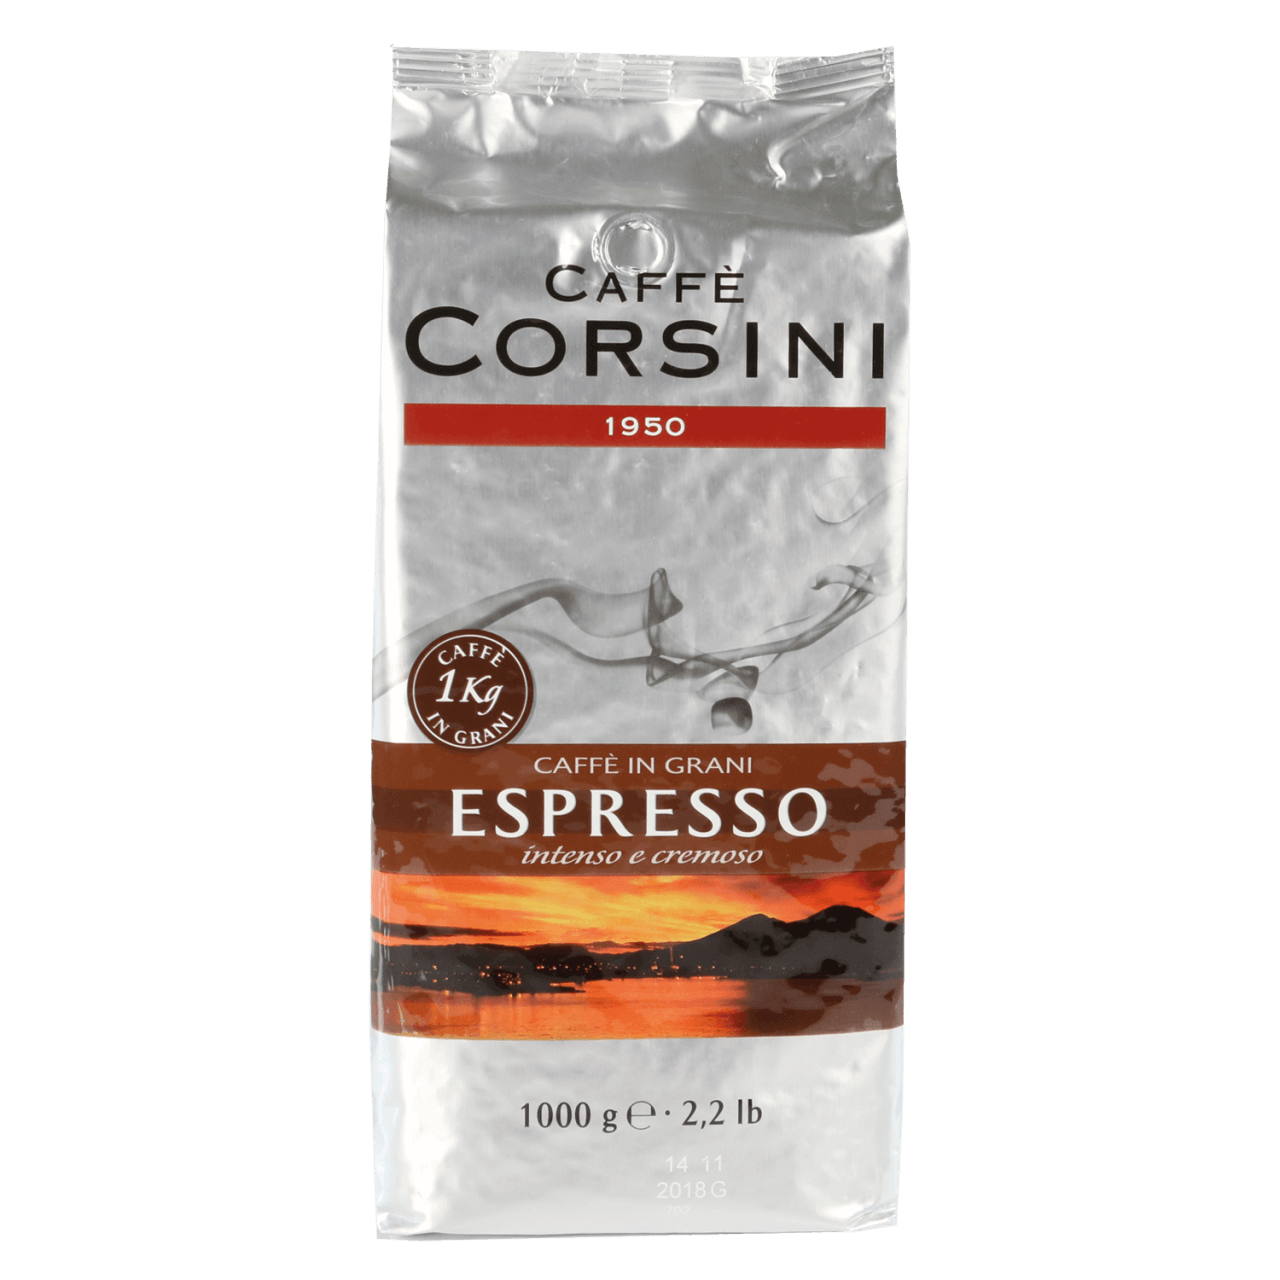 Corsini Espresso Bohnen für Kaffee und Espresso 1kg